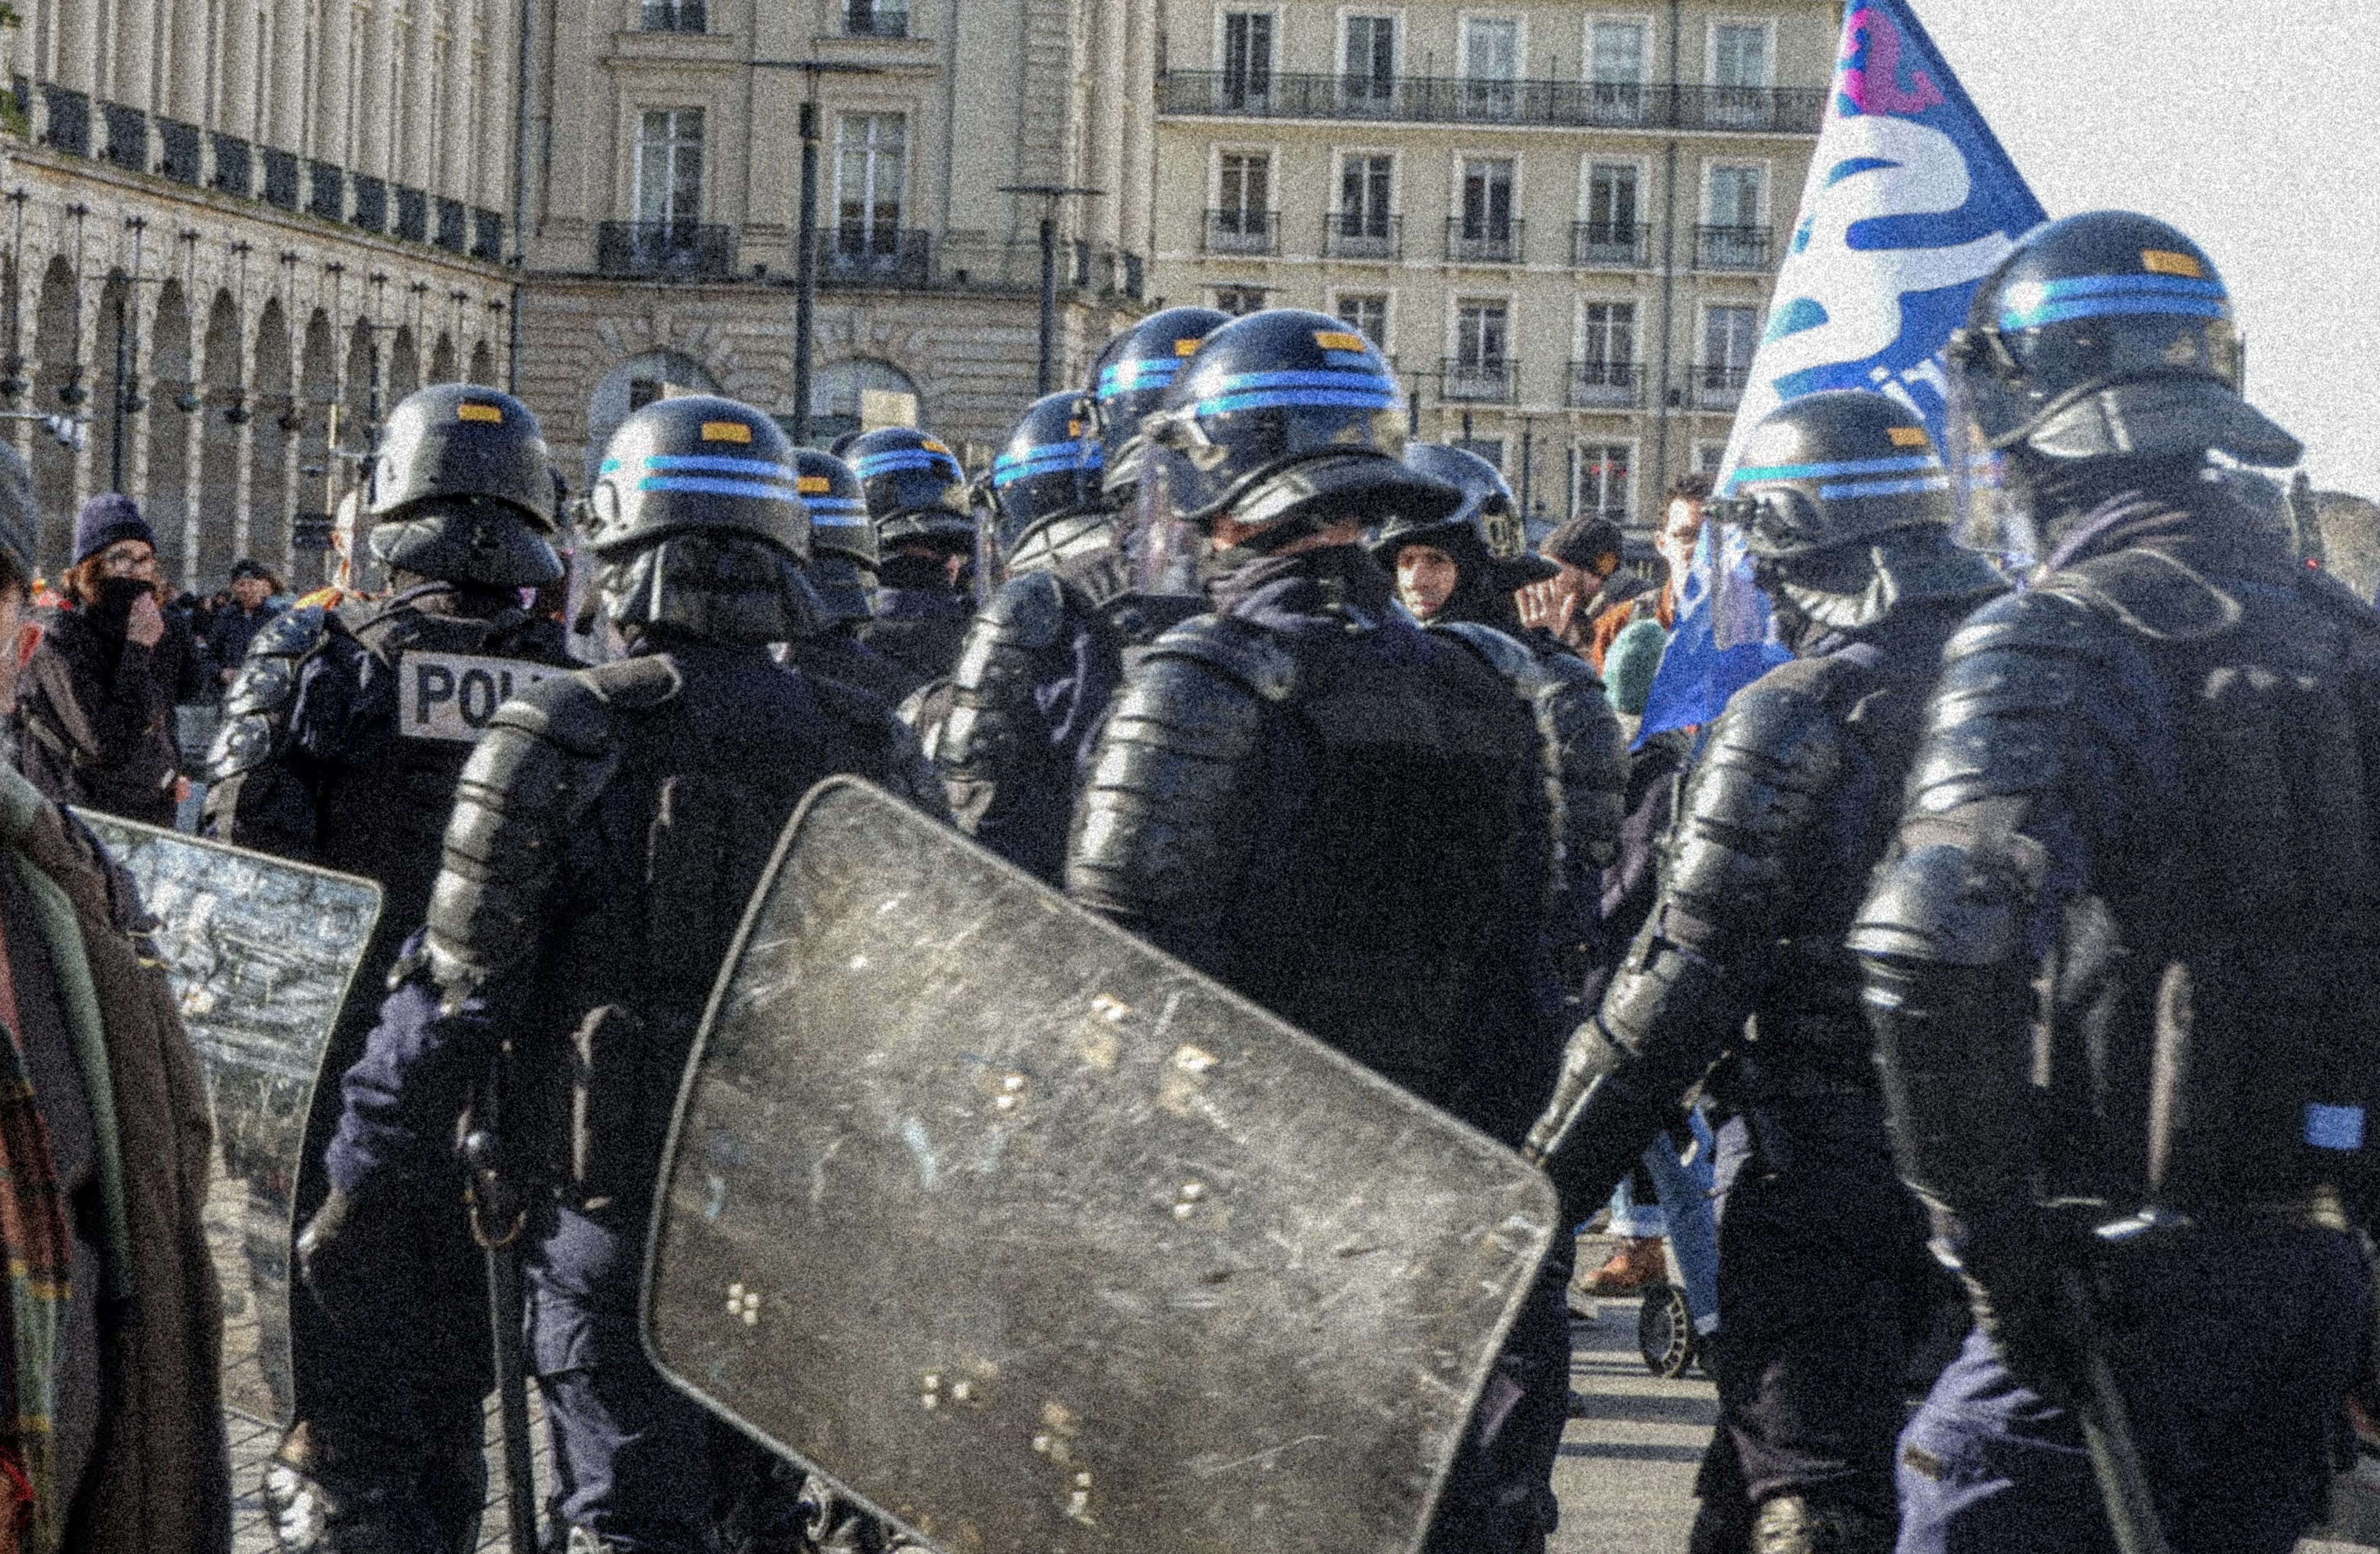 Canon à eau, arrestations et prison ferme : une manifestation régionale violemment réprimée à Rennes